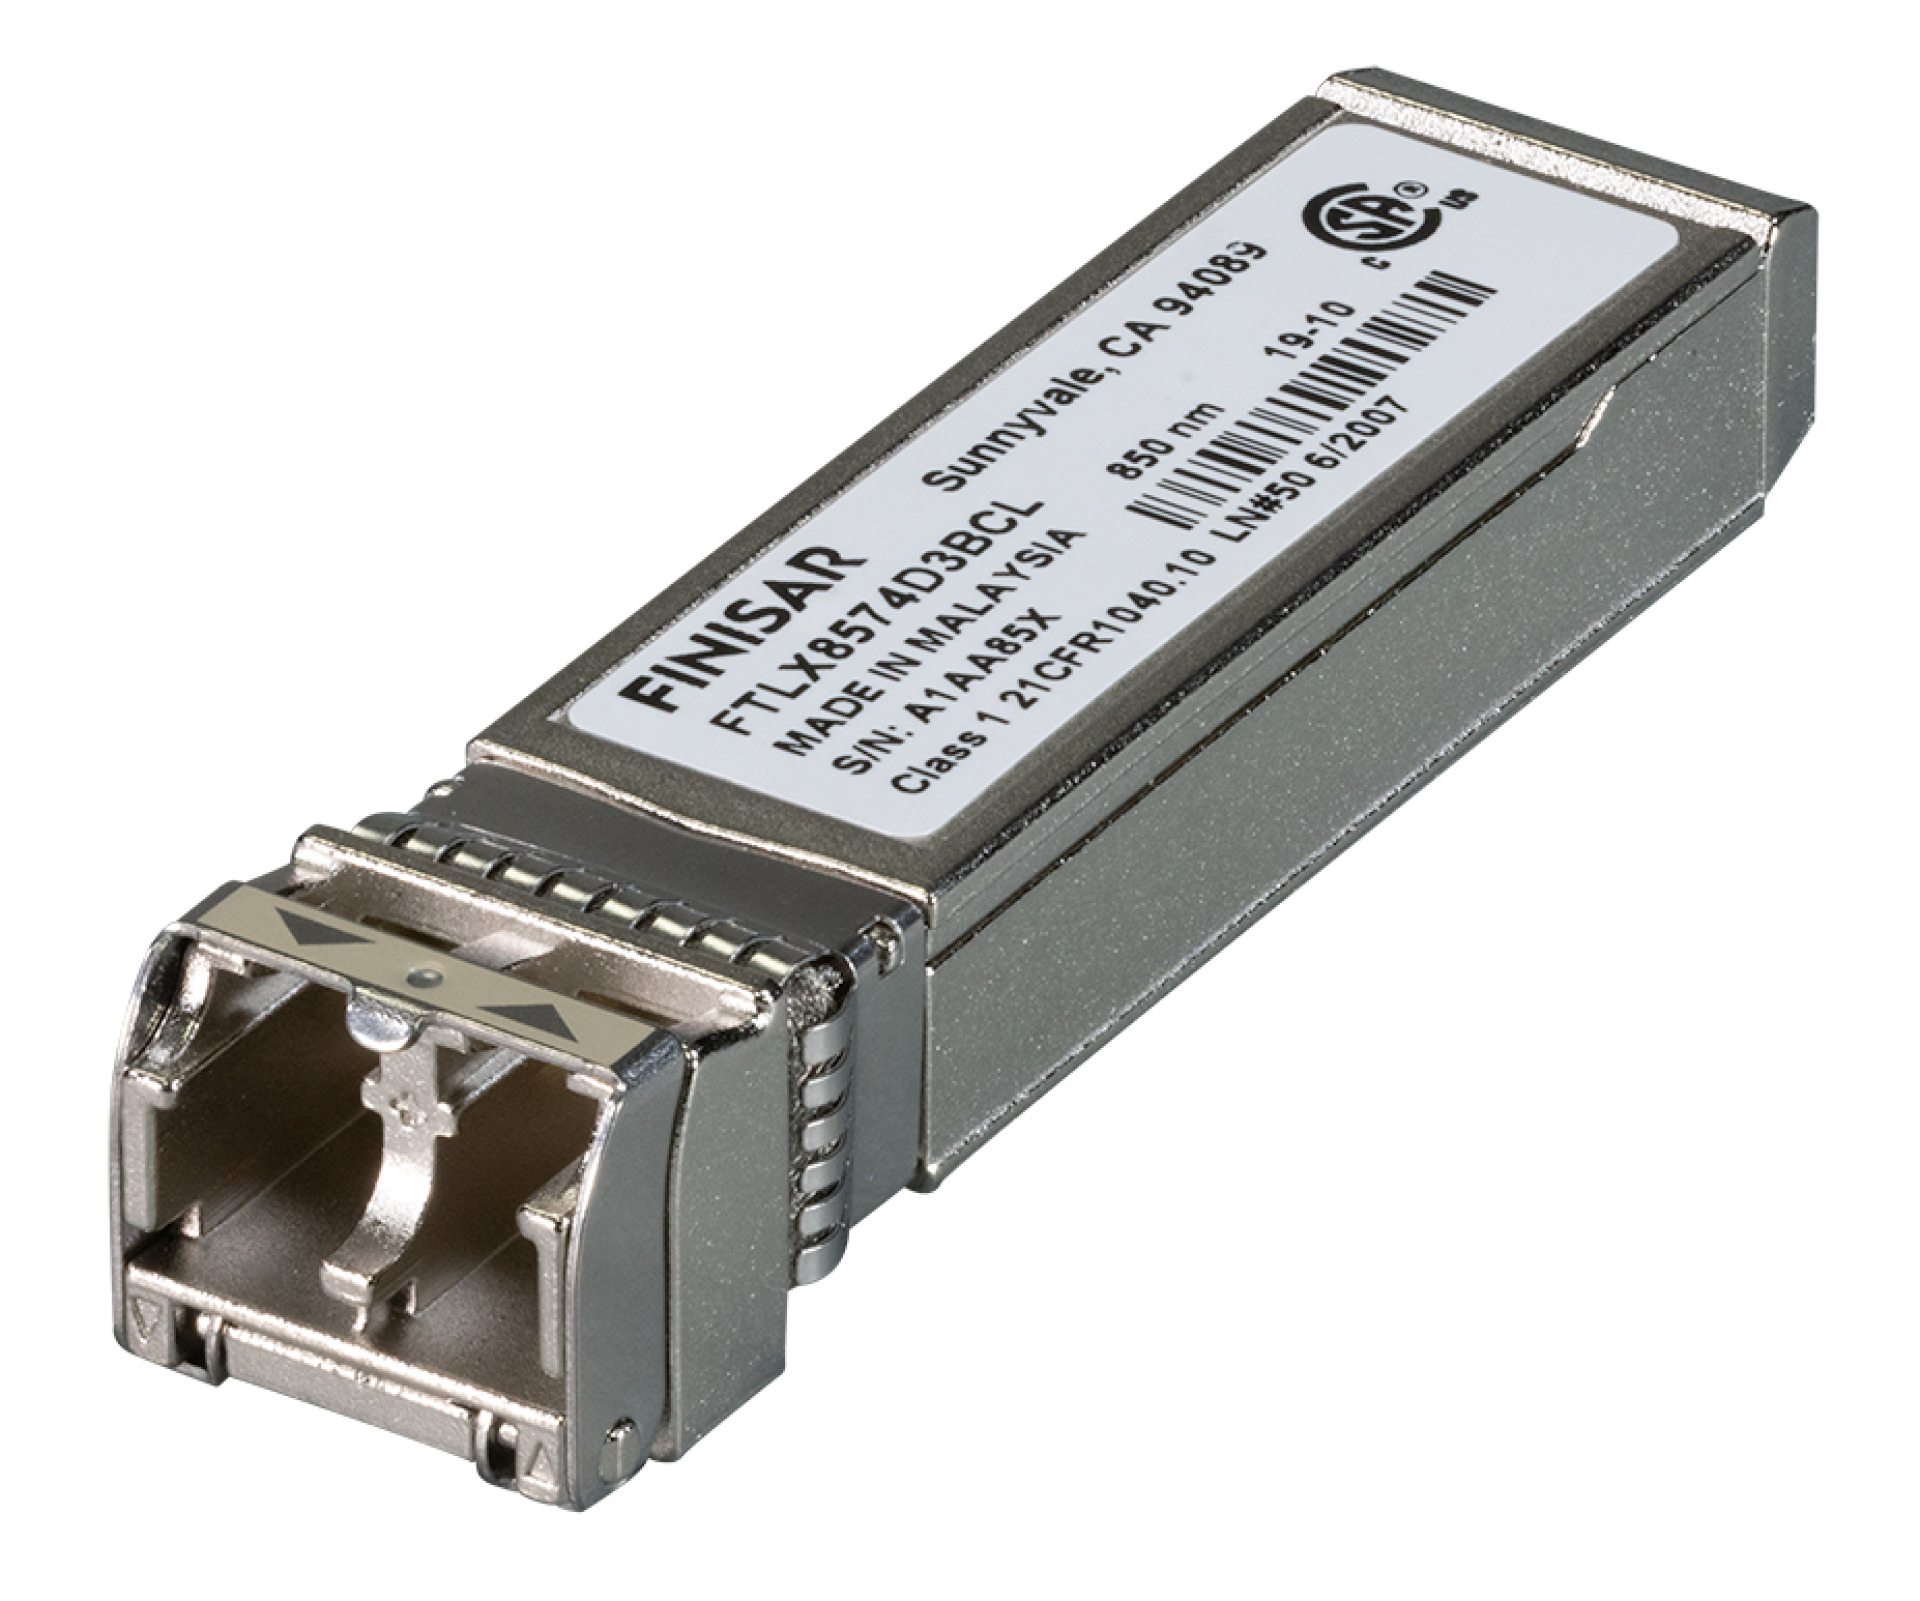 MiniGBIC MM 10GBase SFP+, LC, OM2/82m - OM3/300m - OM4/400m